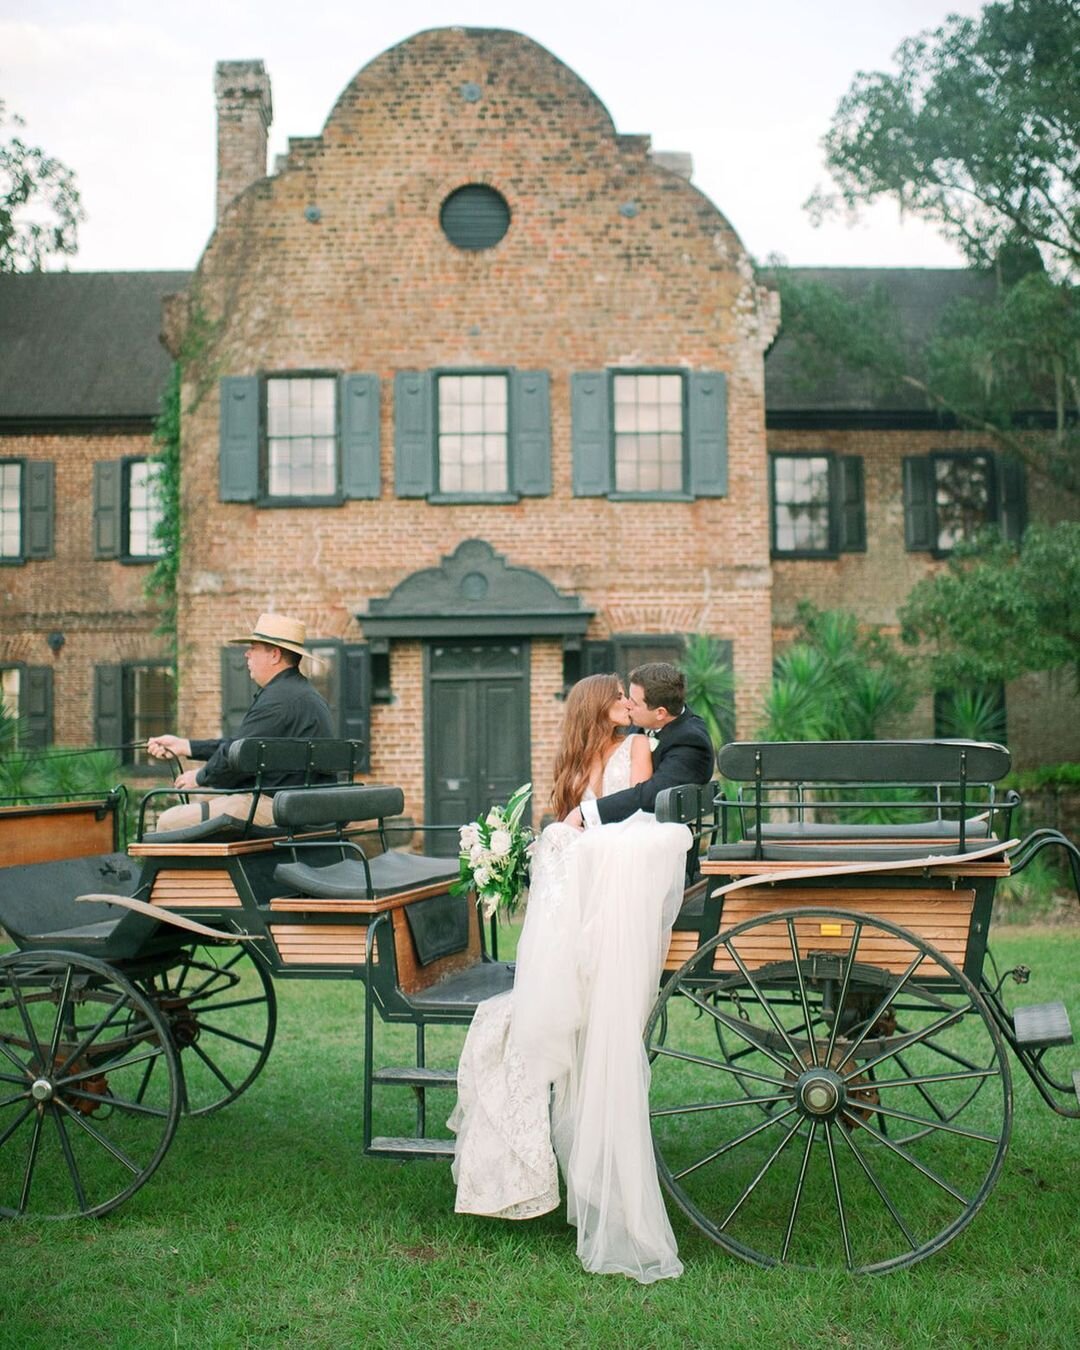 Wedding at Middleton Place, Julie Livingston Photography (@julielivingstonphotography)